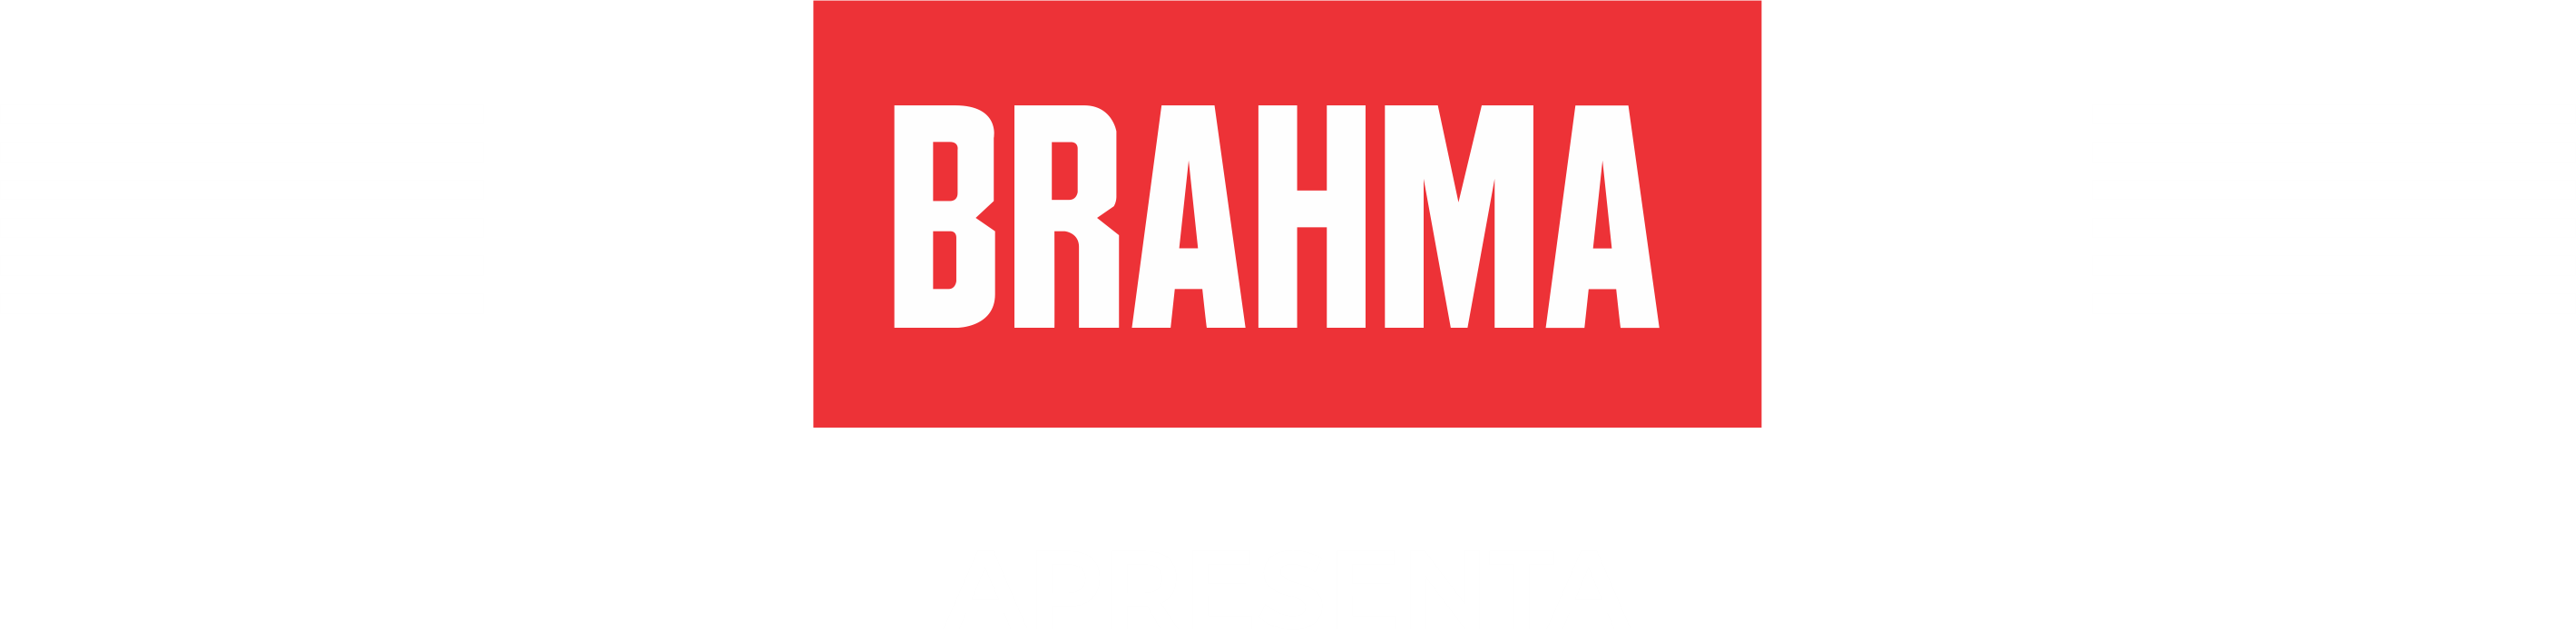 Brahma Apresenta